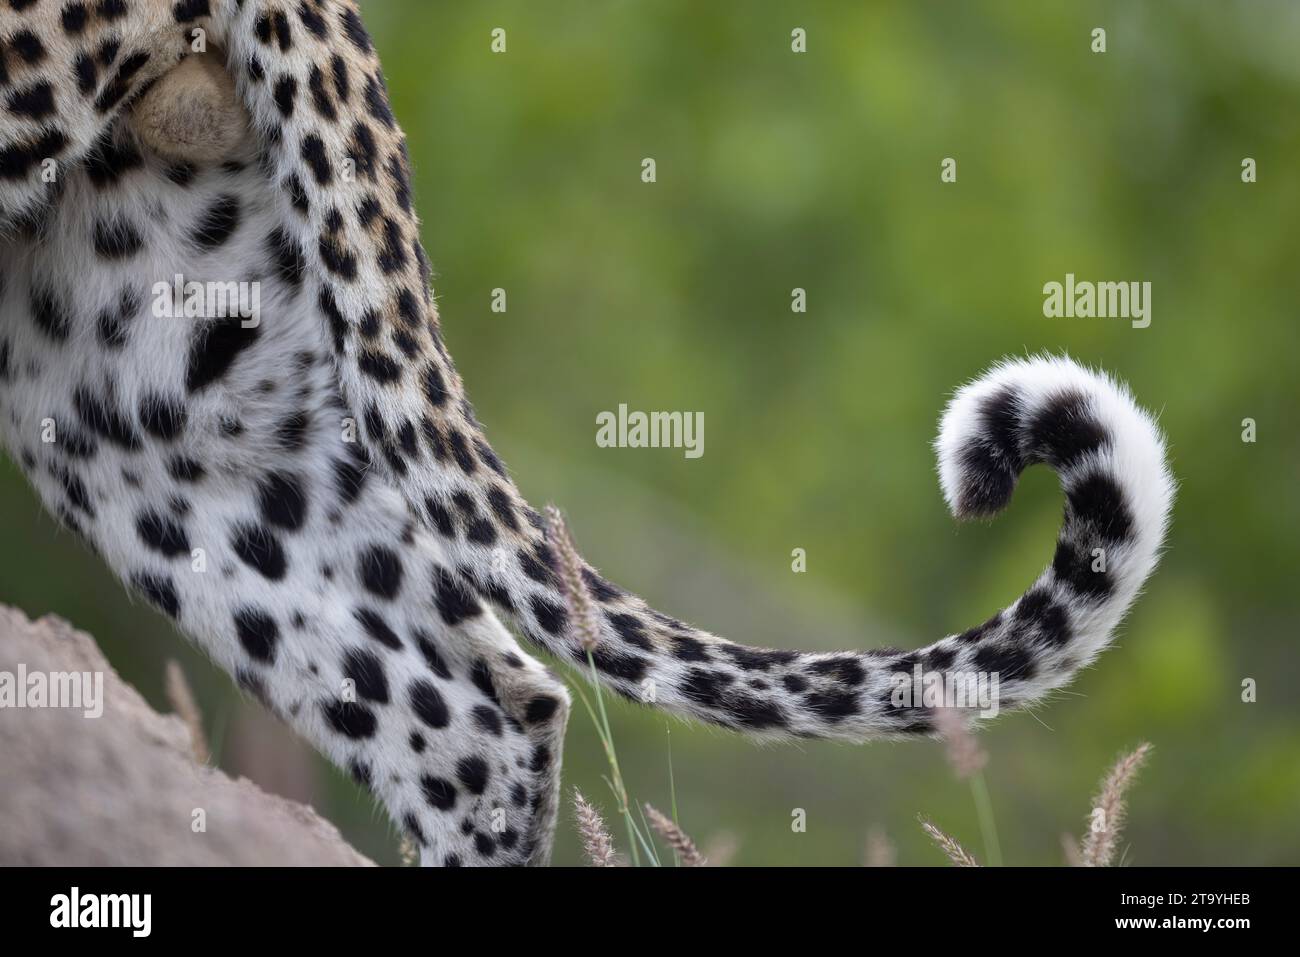 Pointe recourbée d'un léopard mâle sur un fond vert Banque D'Images